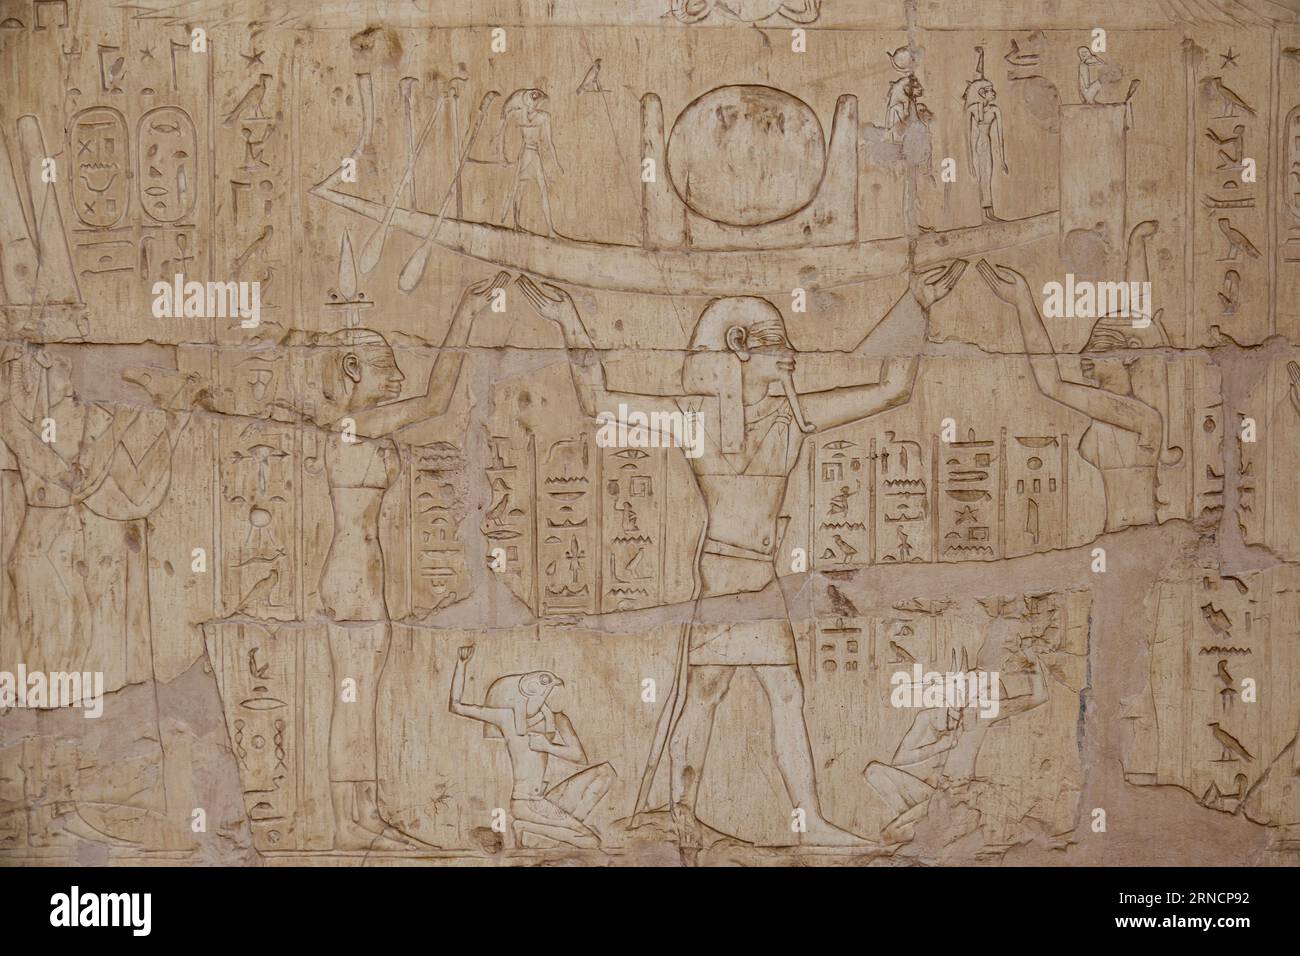 Lavori di rilievo nella tomba di Pabasa nelle Tombe di Asasif vicino al Tempio di Hatshepsuts a Deir el-Bahri, Luxor, paesaggio egiziano dei Colli Tebani e mo Foto Stock